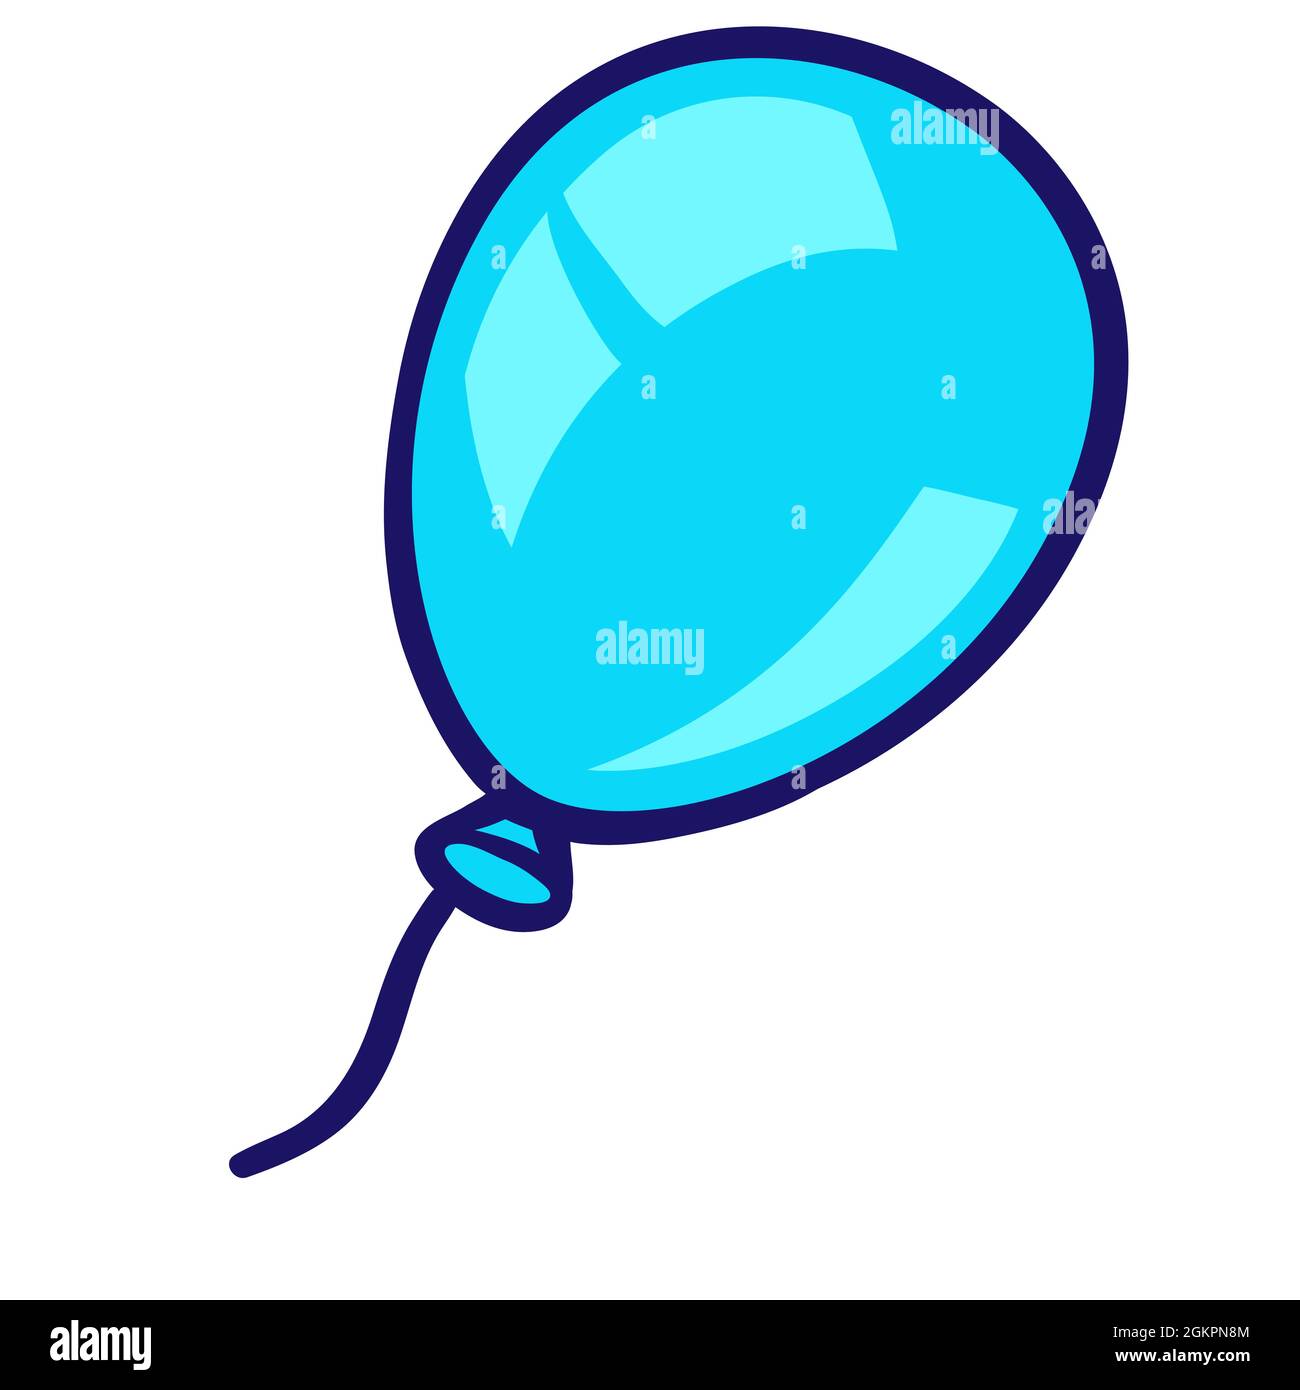 Ilustración del globo en estilo de dibujos animados. Lindo objeto divertido  Imagen Vector de stock - Alamy